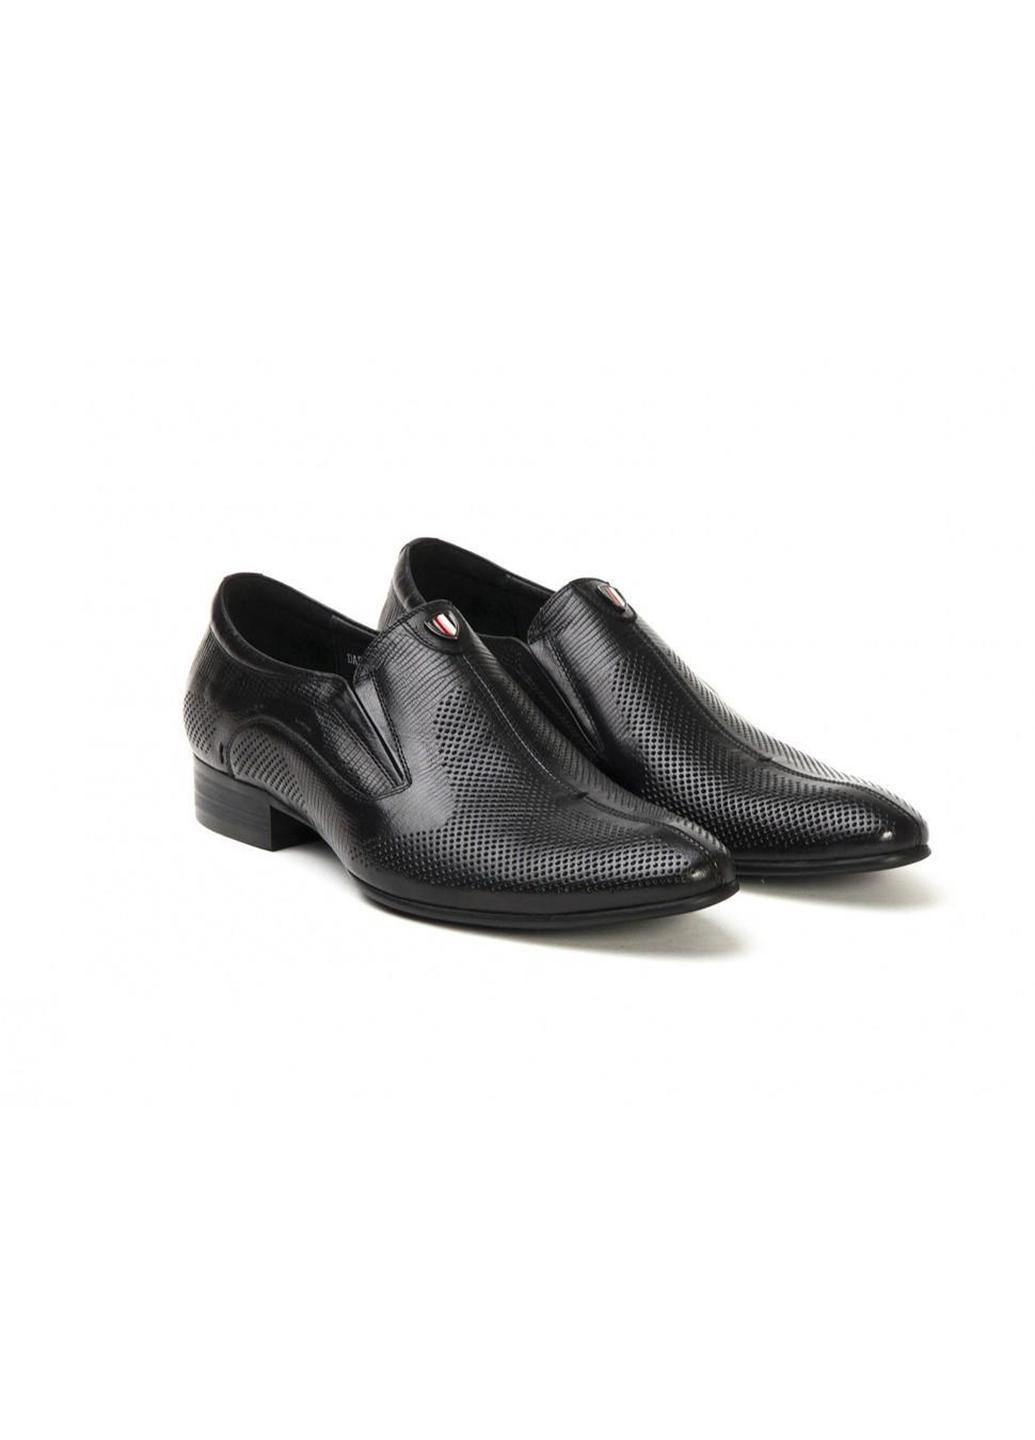 Черные туфли 7142146 цвет черный Carlo Delari